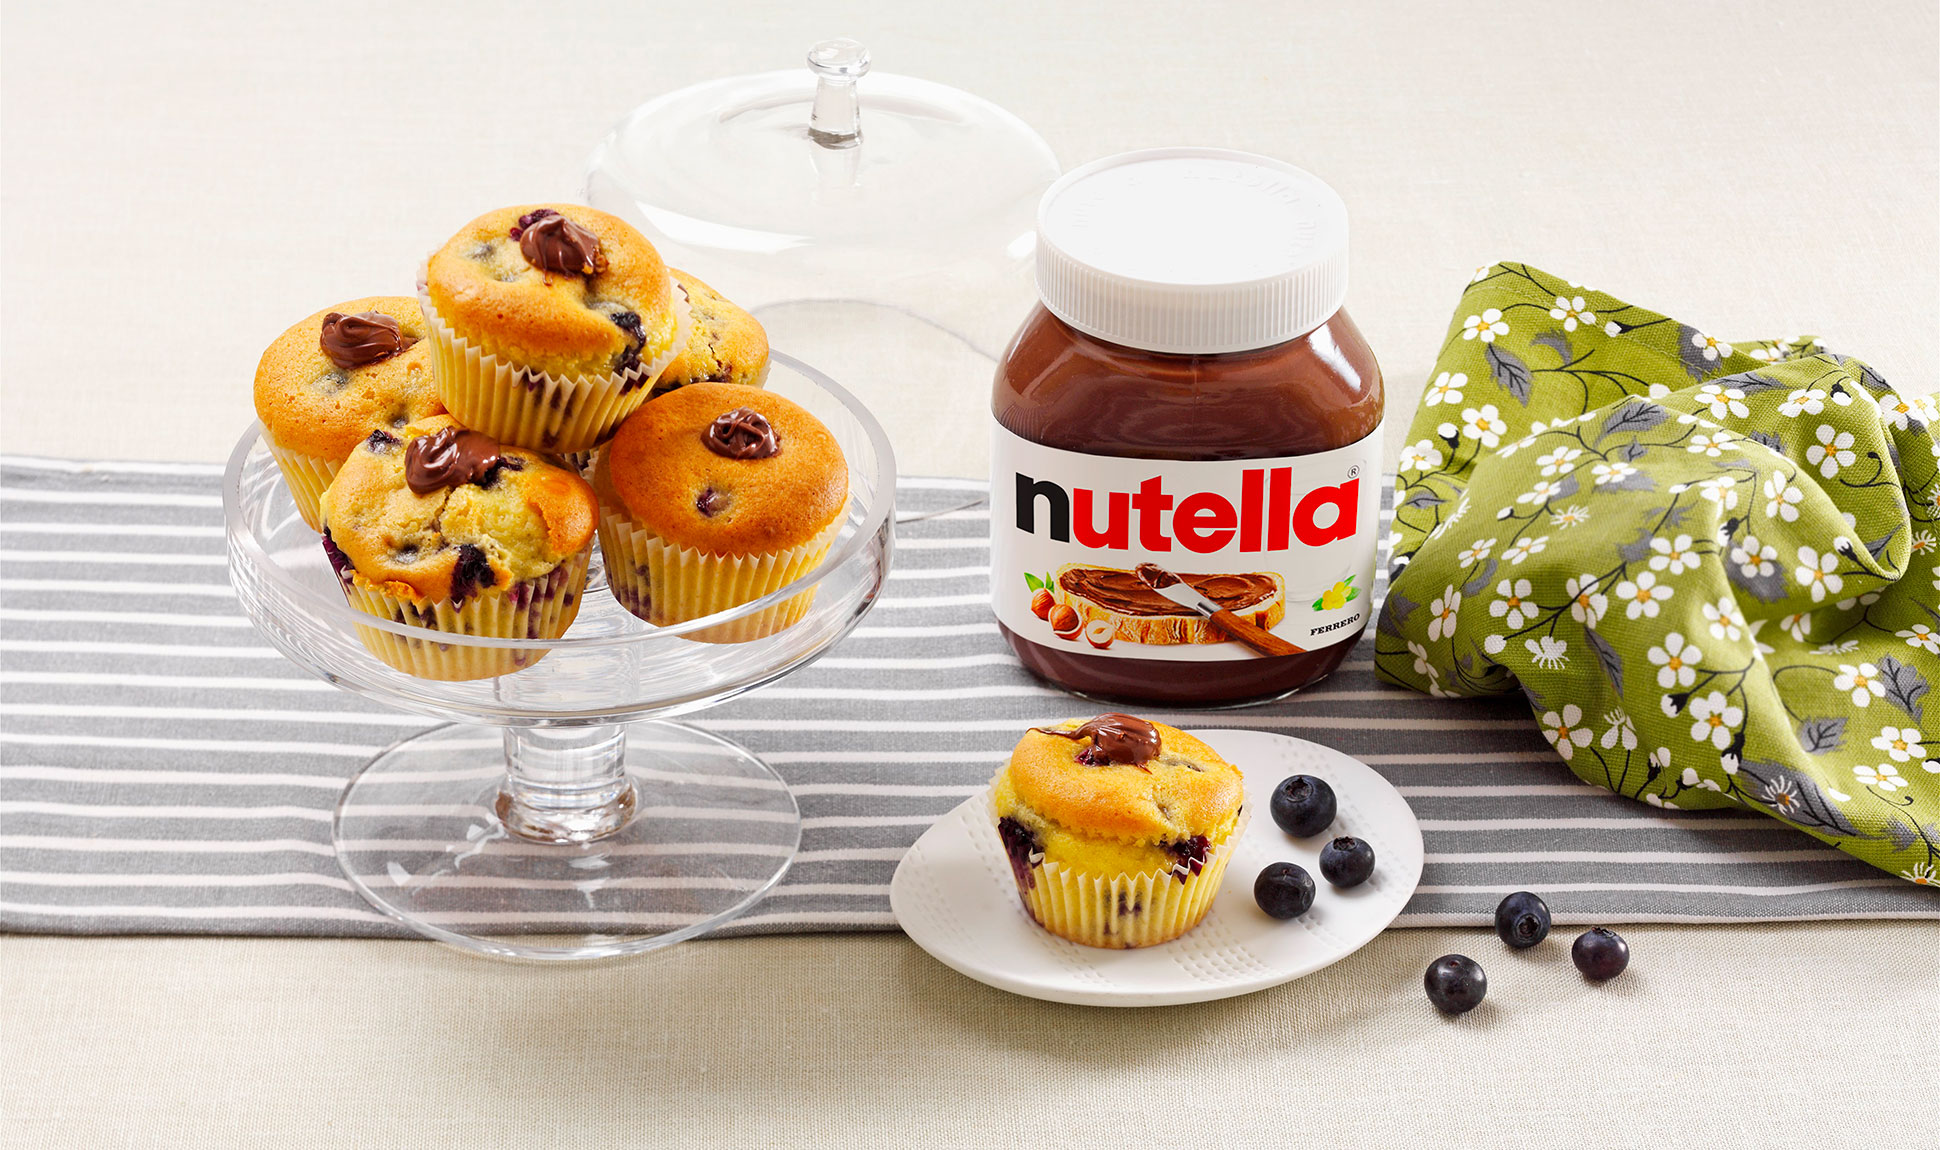 Muffin Nutella®-val és áfonyával